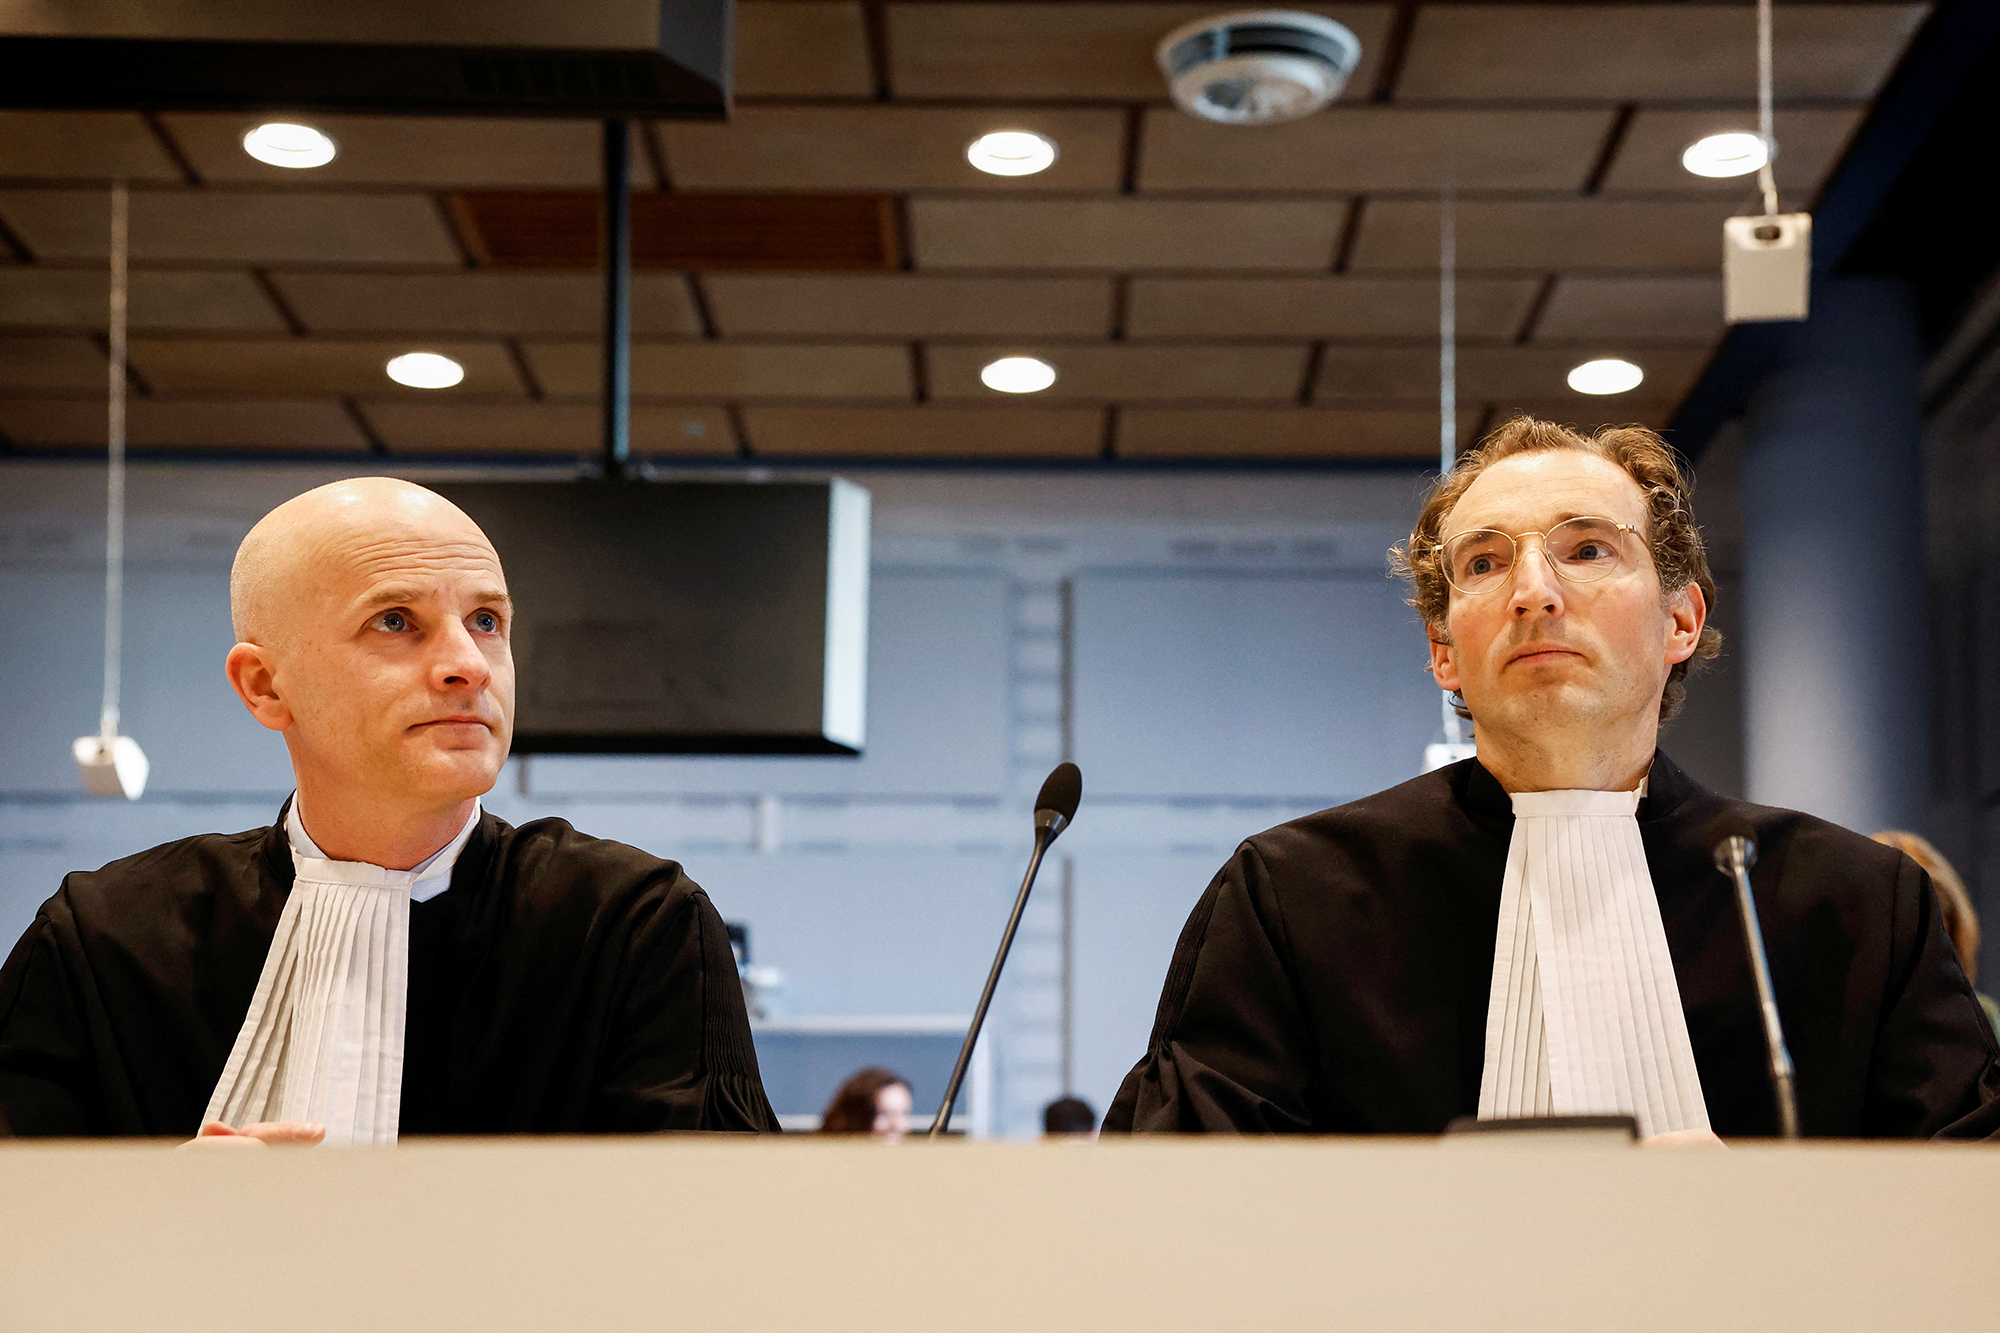 Los abogados del estado Erik Koppe, izquierda, y Reimer Veldhuis observan el caso judicial de grupos de derechos humanos que buscan impedir que el gobierno holandés exporte piezas de aviones de combate F-35 a Israel en La Haya, Países Bajos, el 12 de febrero.